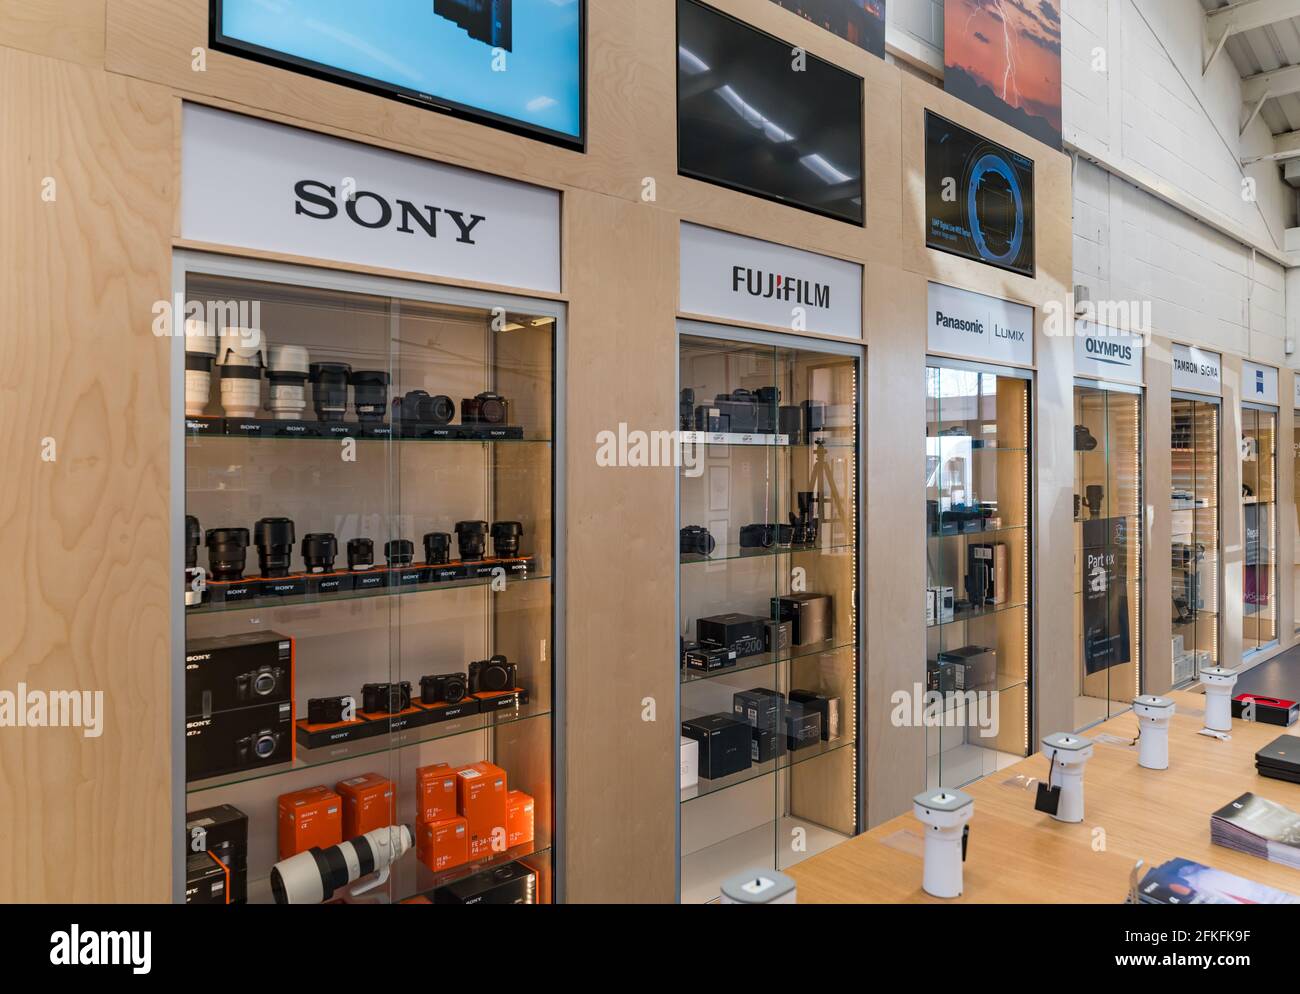 Kamera Store Interieur mit Shop Display von Kameras und Objektiven in Schränken von verschiedenen Kameramarken: Sony, Fujifilm, Panasonic & Olympus Marken Stockfoto